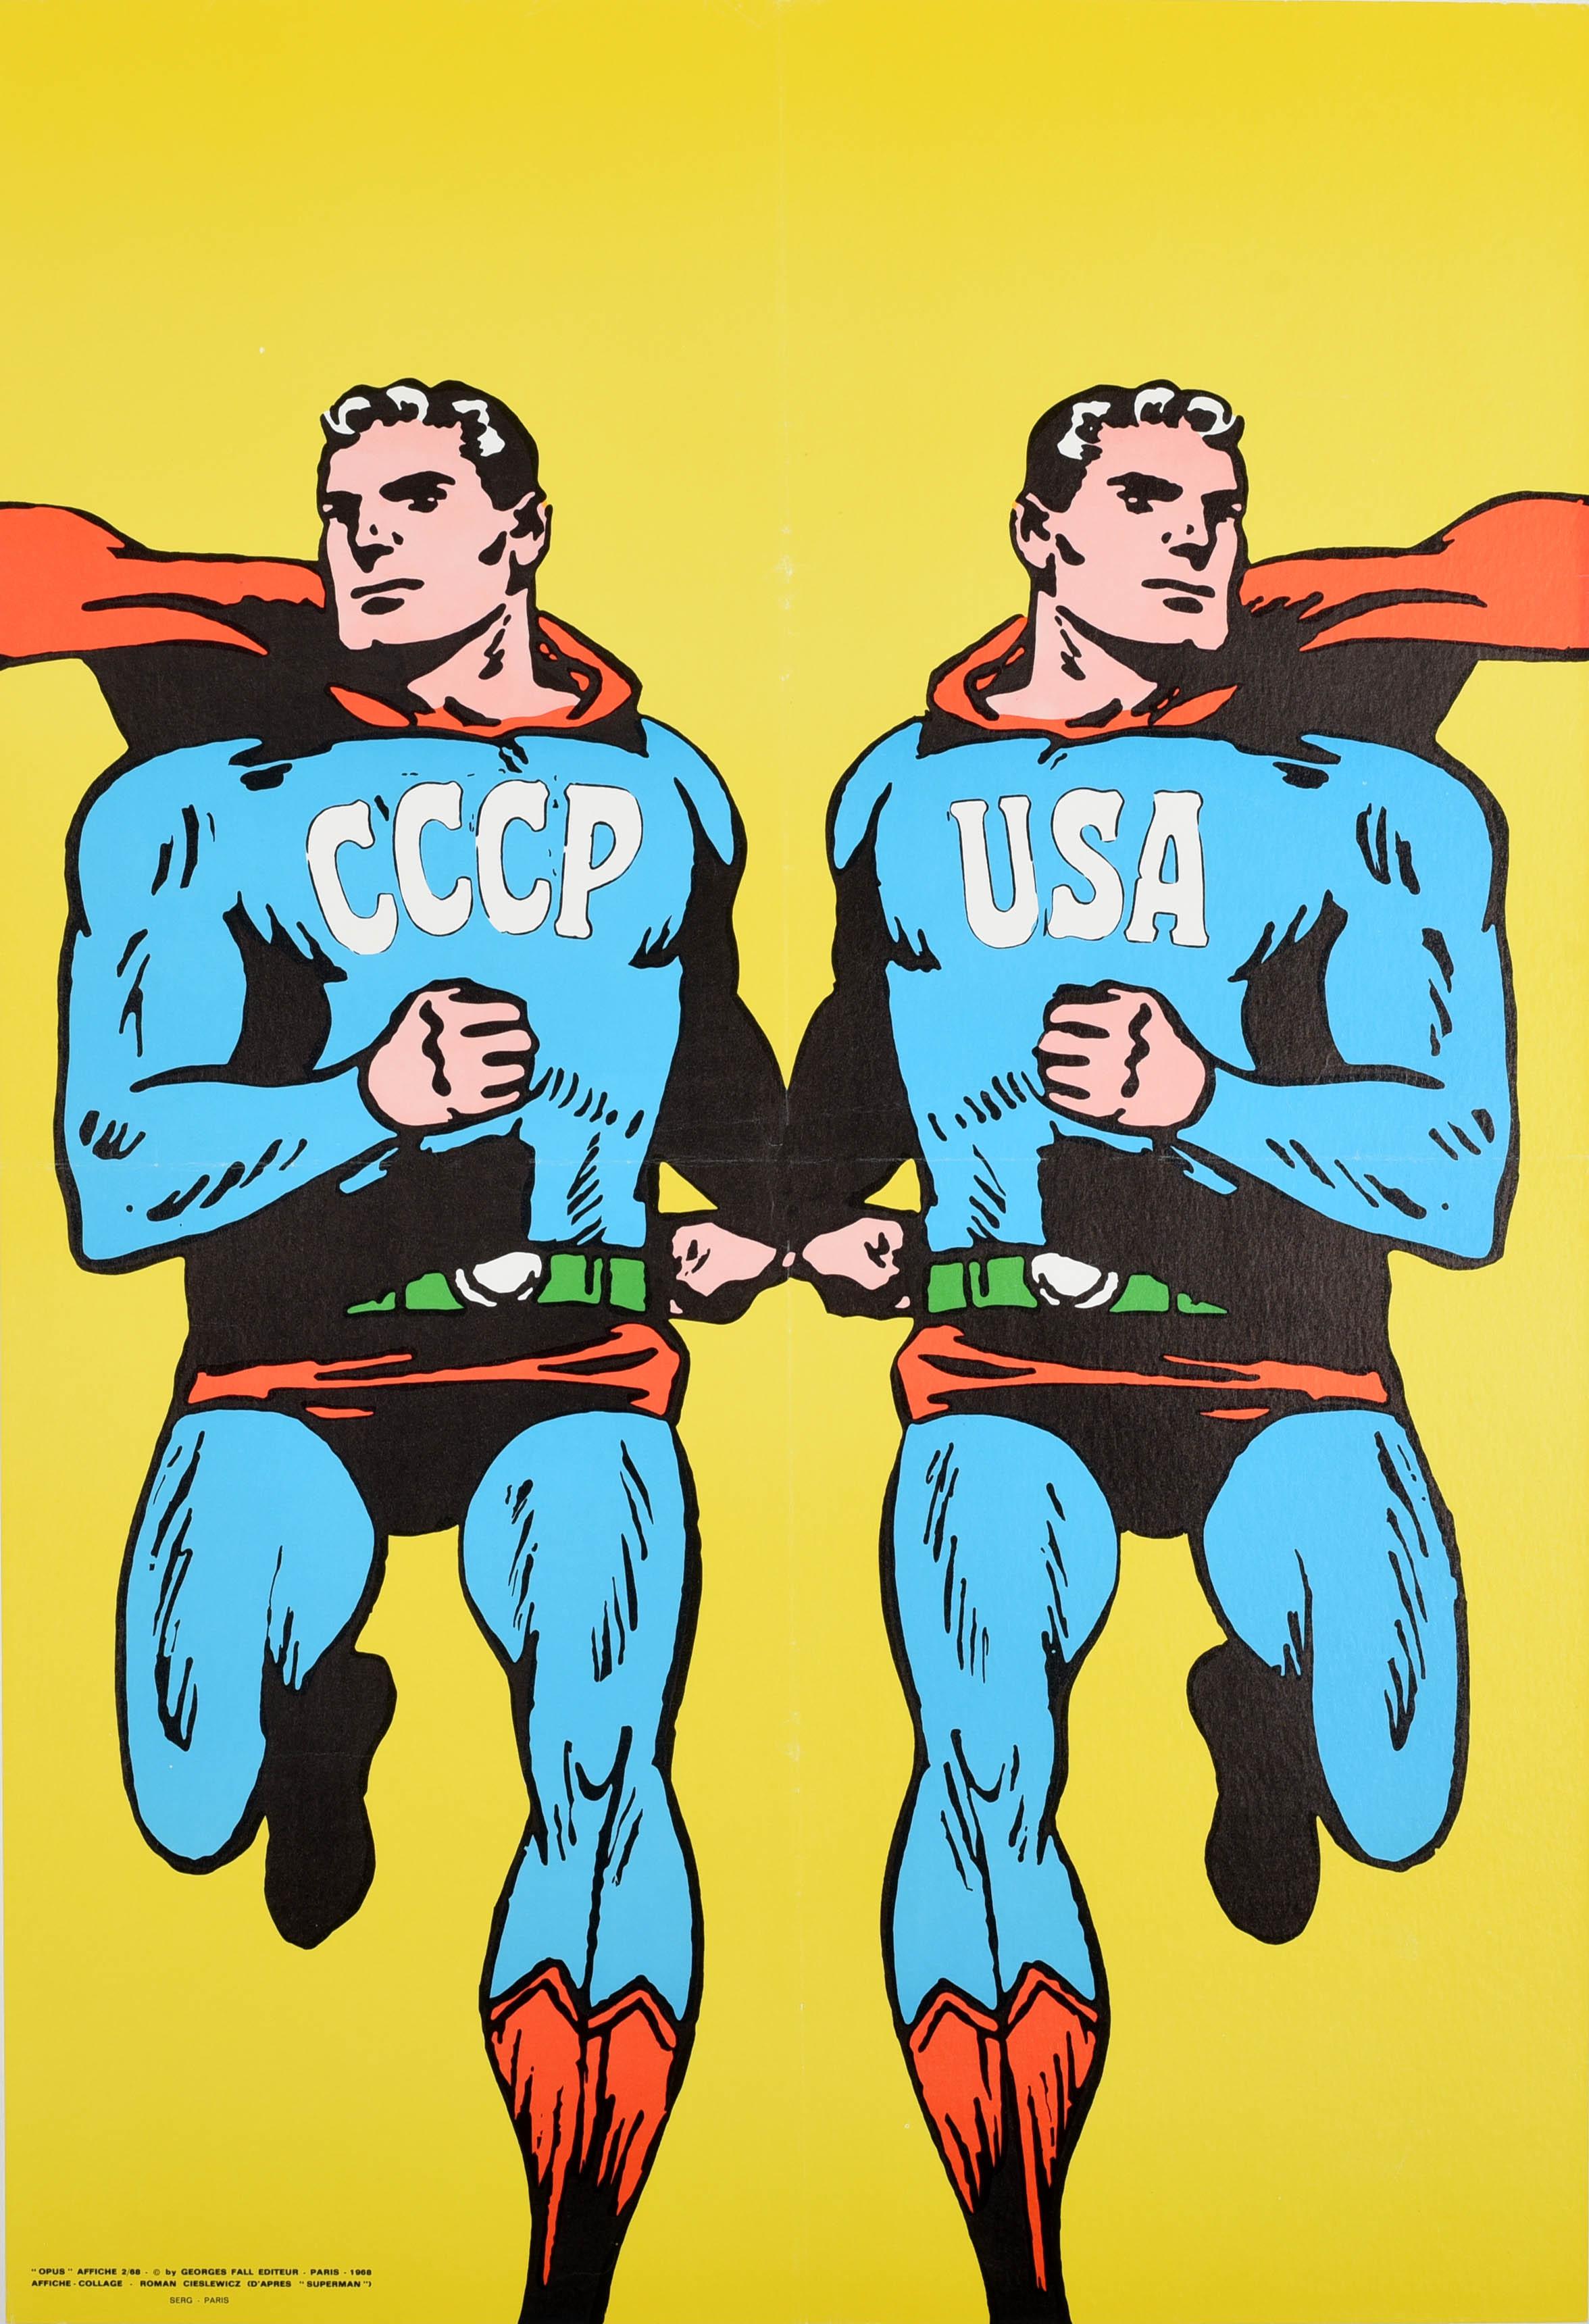 Print Roman Cieslewicz - Affiche de propagande vintage originale URSS USA Superman, Guerre froide, URSS, Union soviétique, Comique